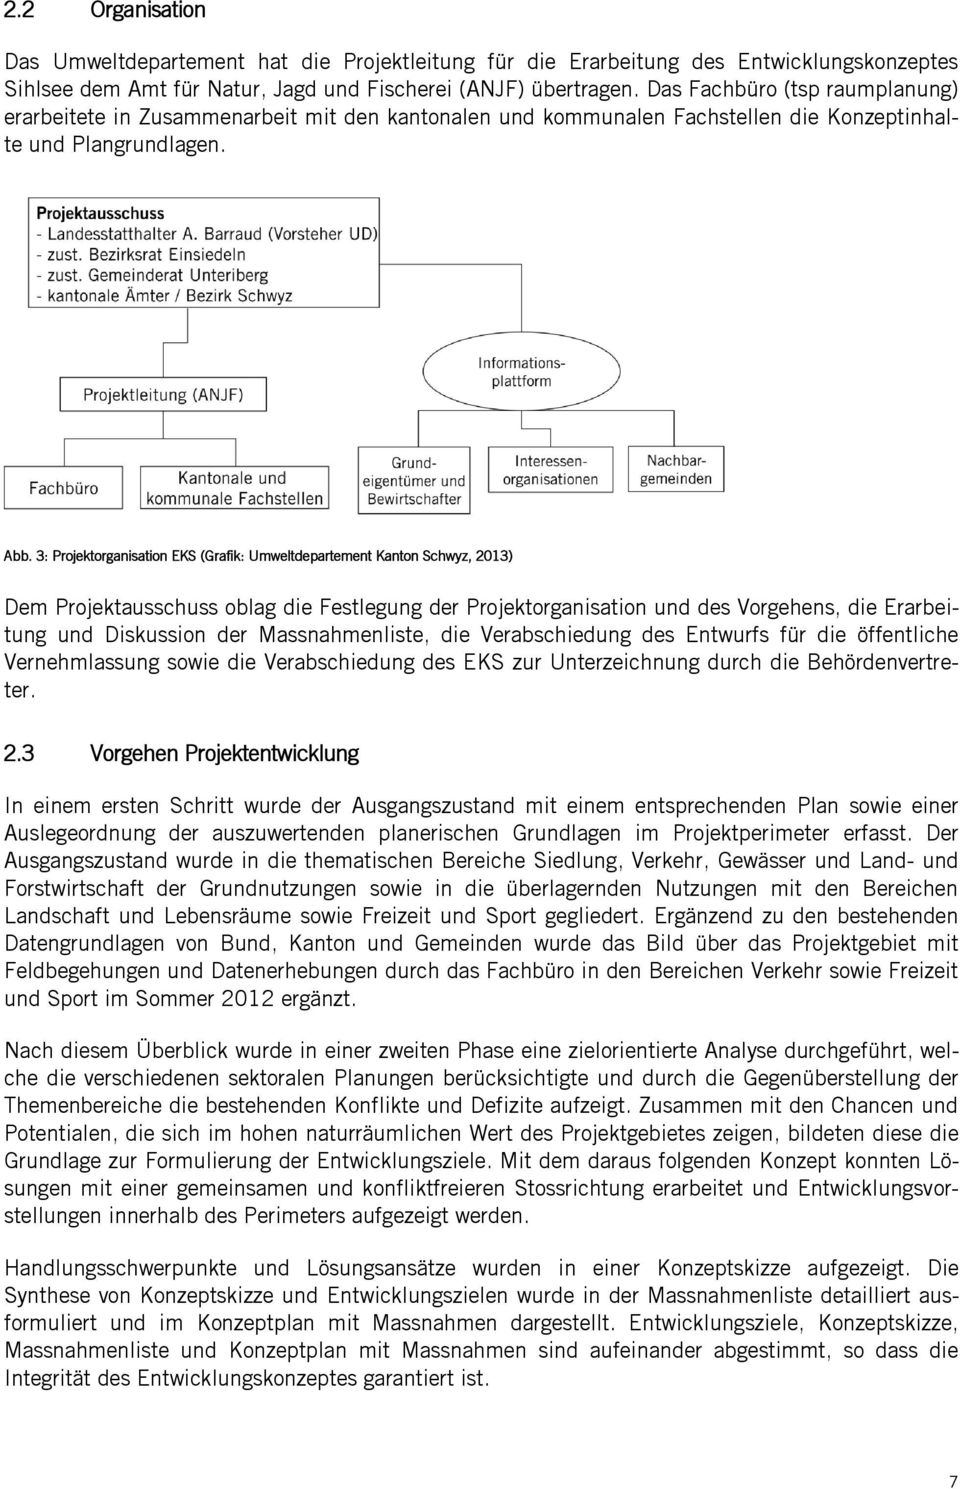 3: Projektorganisation EKS (Grafik: Umweltdepartement Kanton Schwyz, 2013) Dem Projektausschuss oblag die Festlegung der Projektorganisation und des Vorgehens, die Erarbeitung und Diskussion der